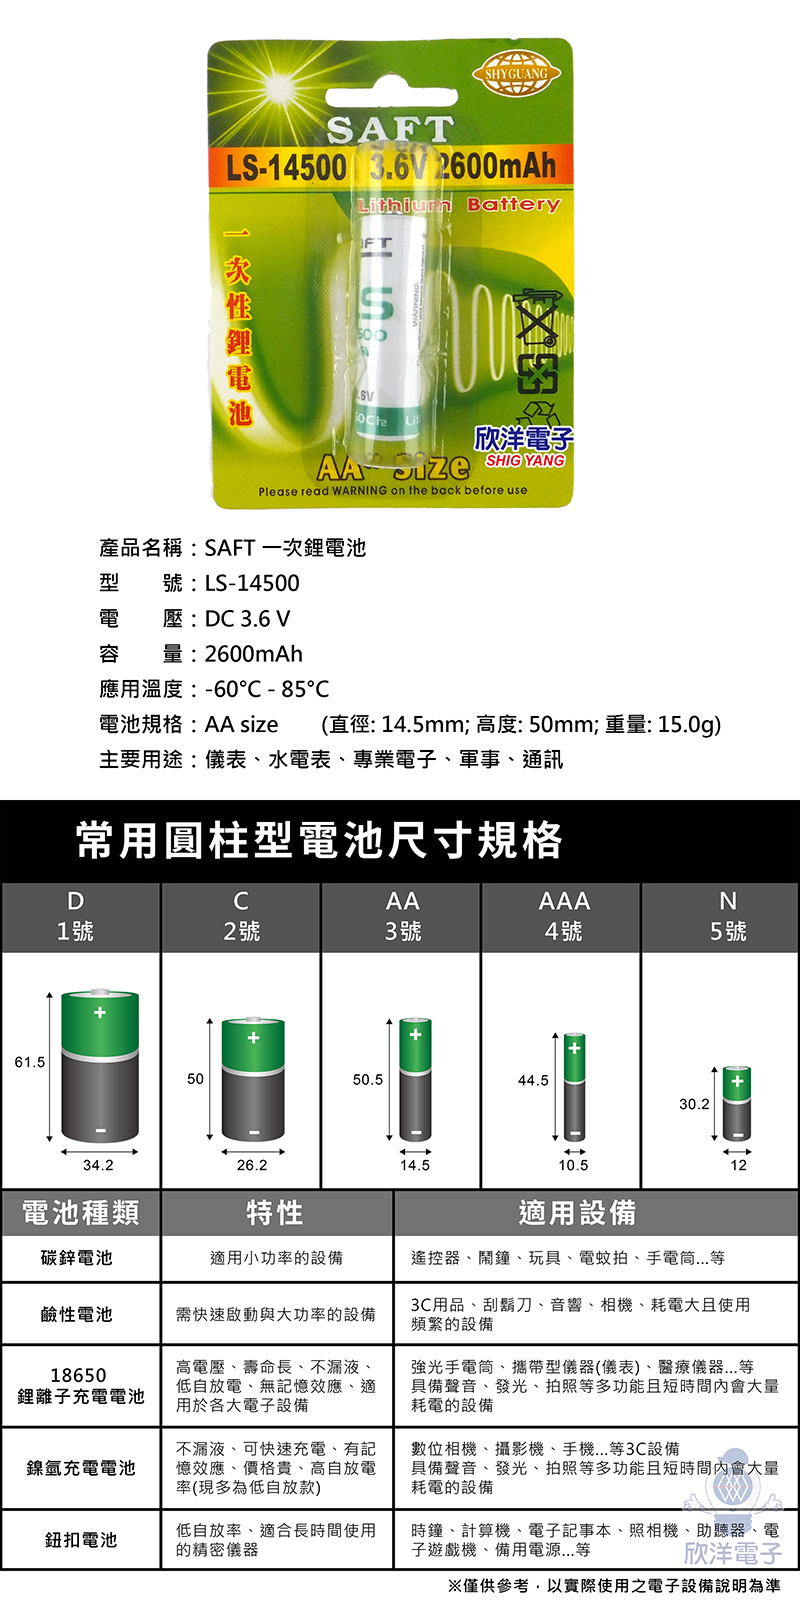 欣洋電子※ SAFT 特殊電池LS-14500一次性鋰電池3.6V 2600mAh(AA 3號電池